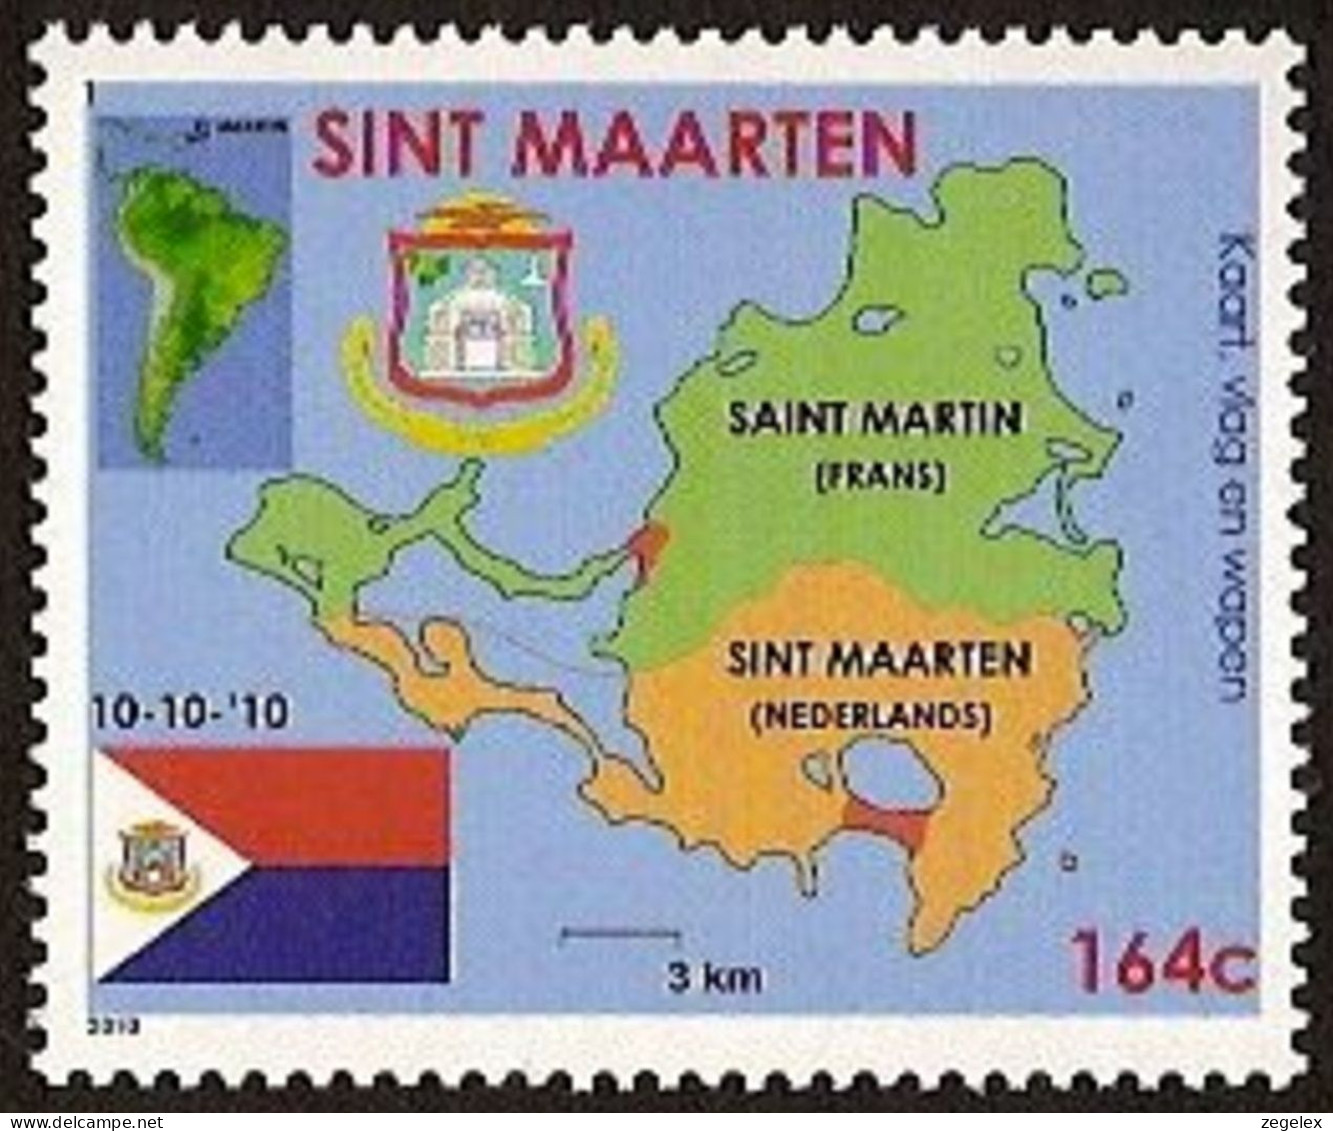 Sint Maarten 2010 Wapen, Vlag, Landkaart NVPH SM-001 MNH ** Postfrisch - Curazao, Antillas Holandesas, Aruba